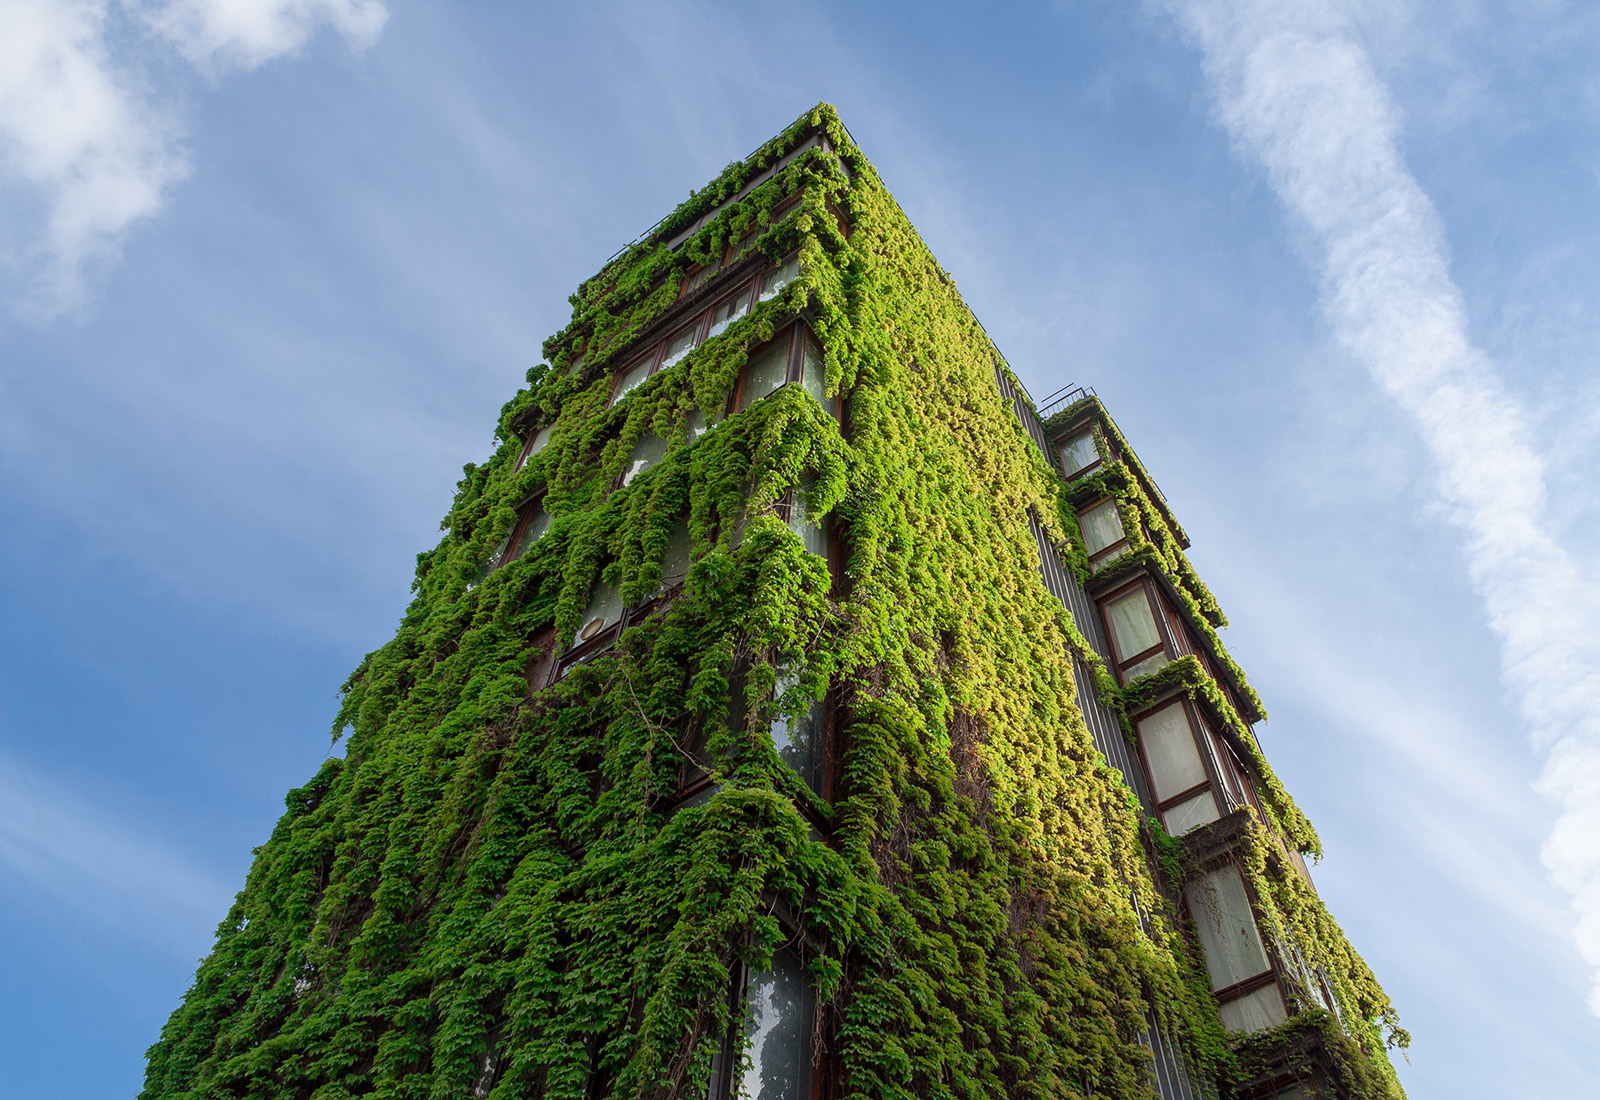 Bosco Verticale in Mailand: Fassadenbegrünung als Luxus